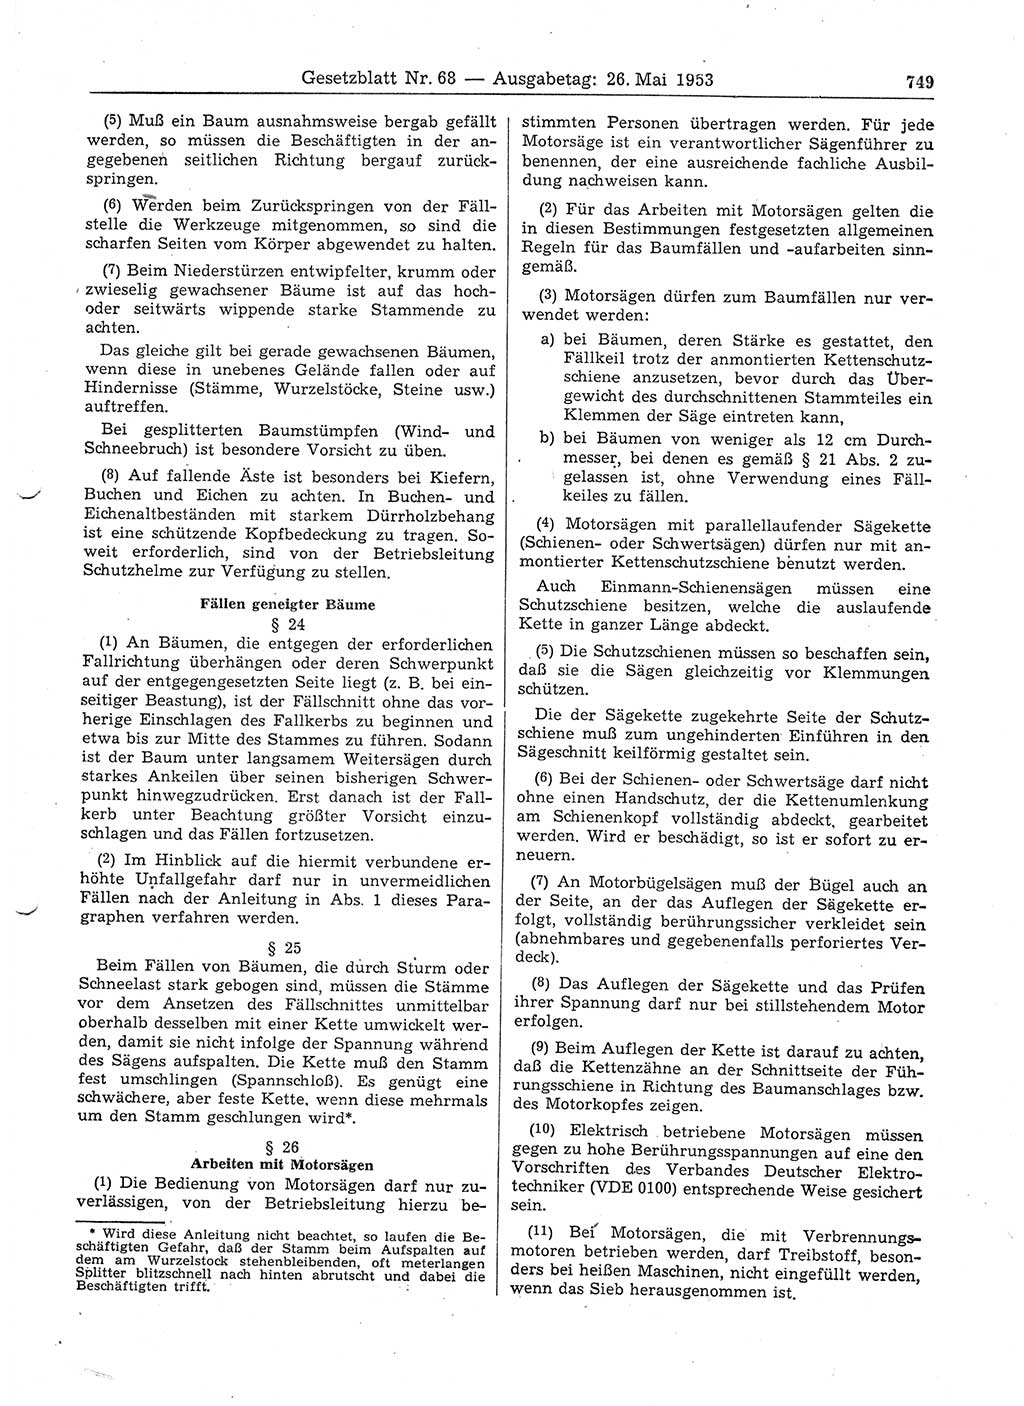 Gesetzblatt (GBl.) der Deutschen Demokratischen Republik (DDR) 1953, Seite 749 (GBl. DDR 1953, S. 749)